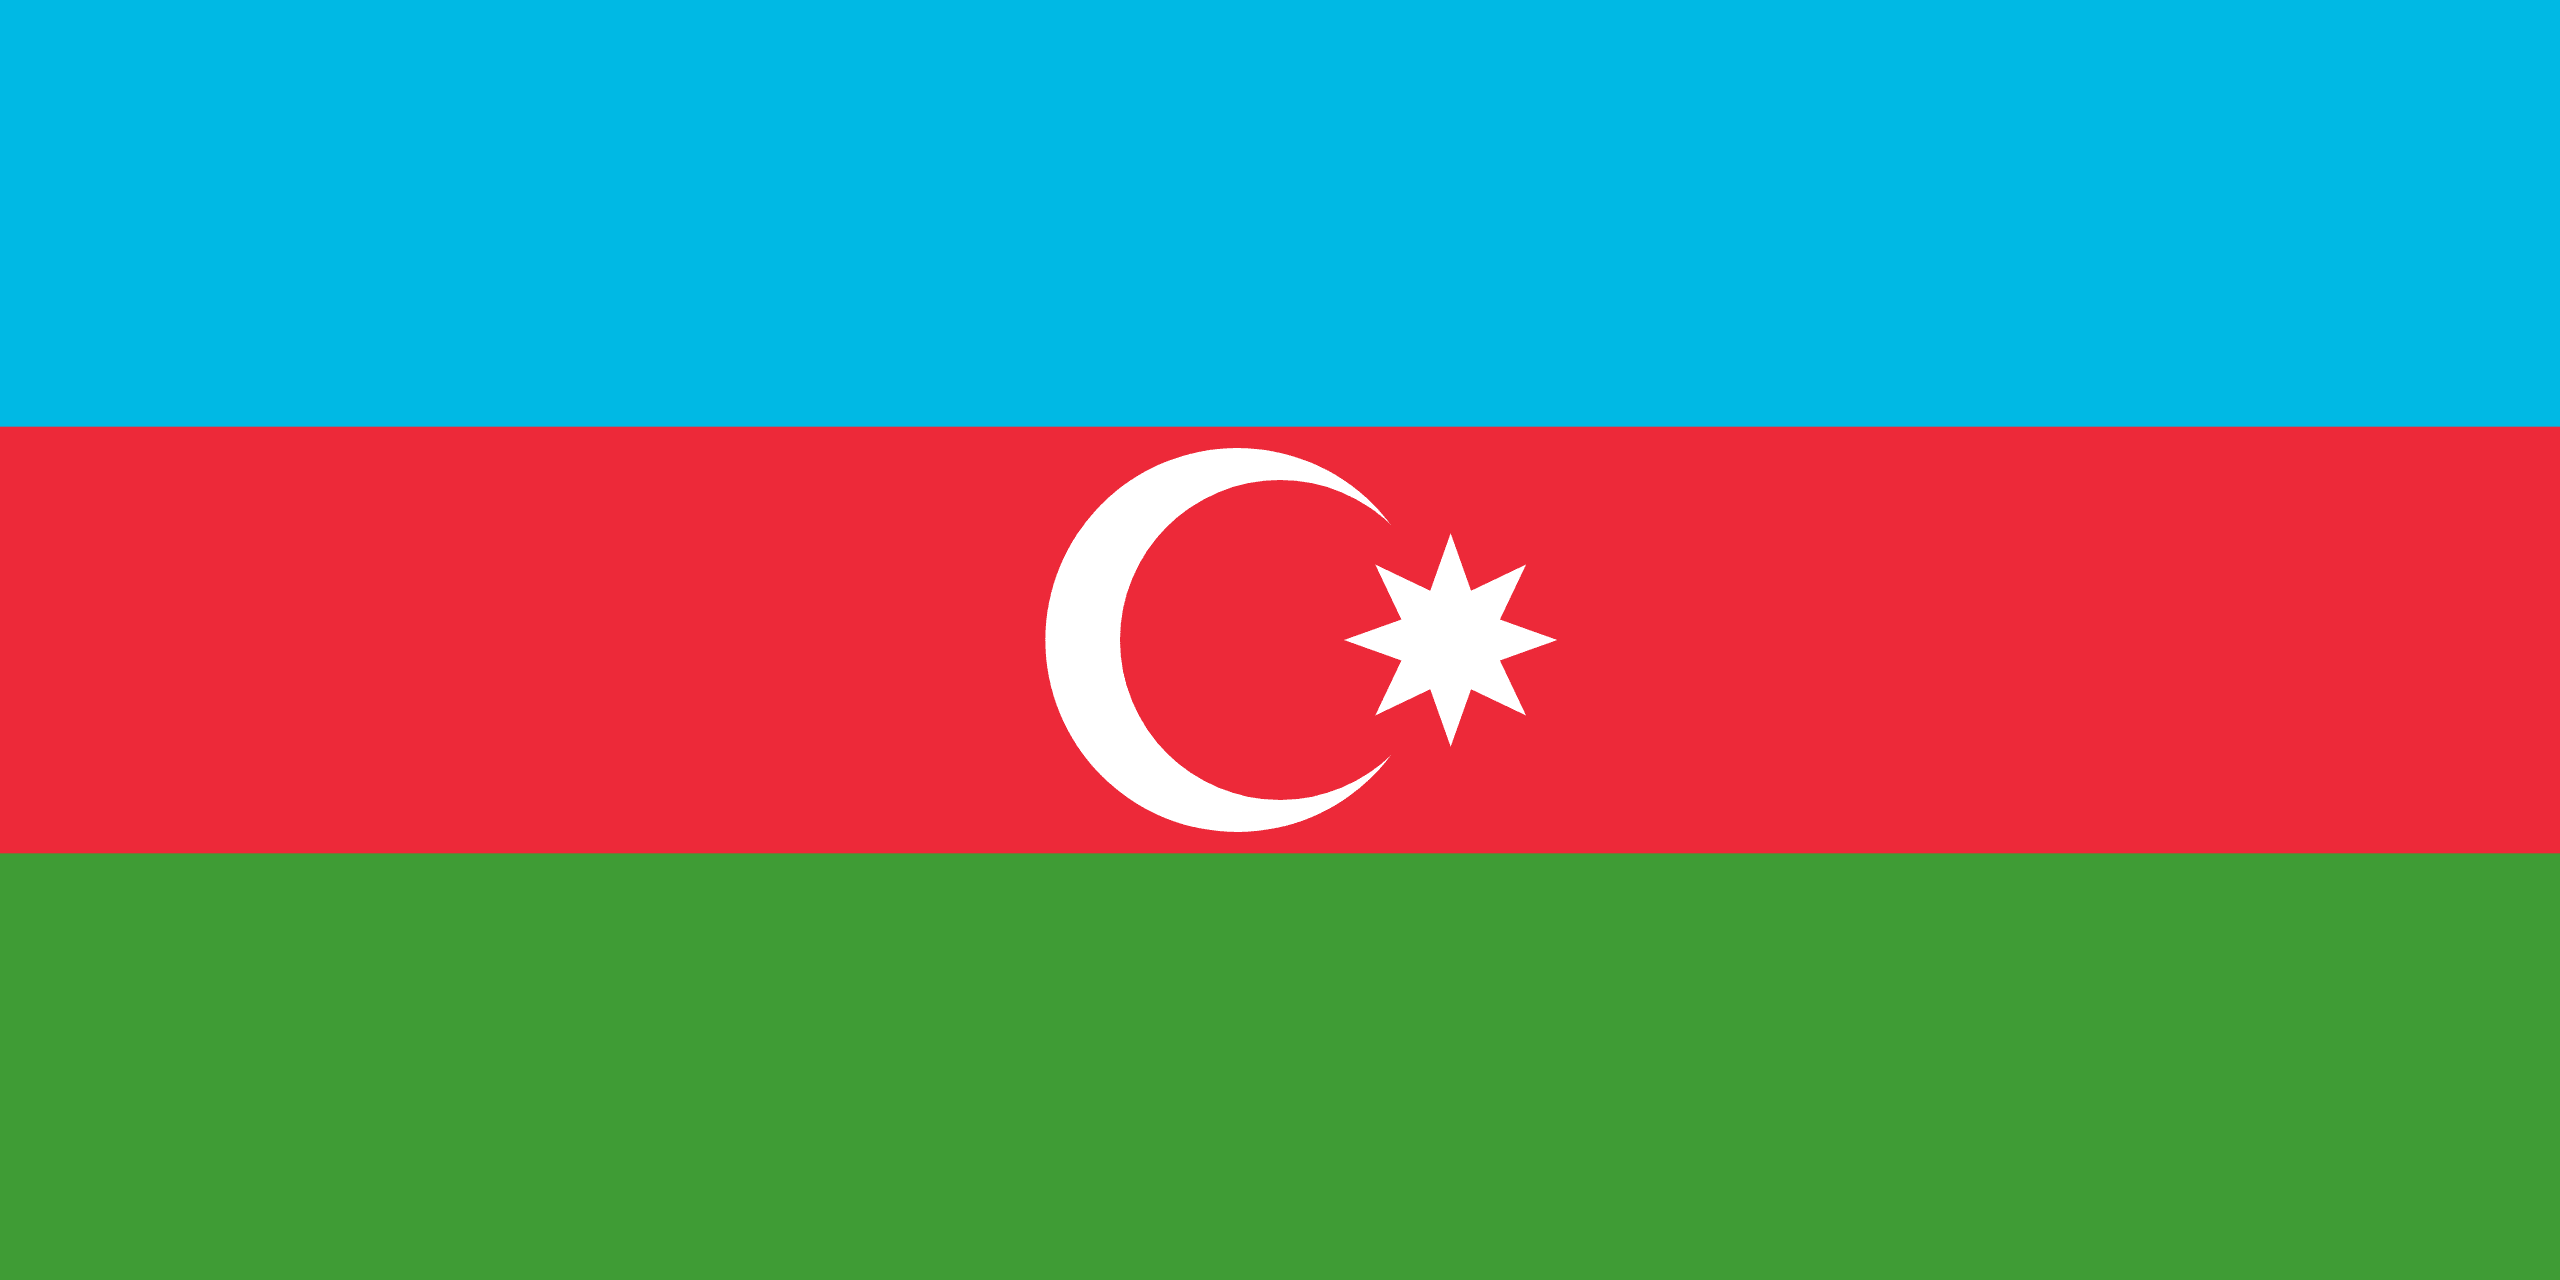 アゼルバイジャン共和国 flag